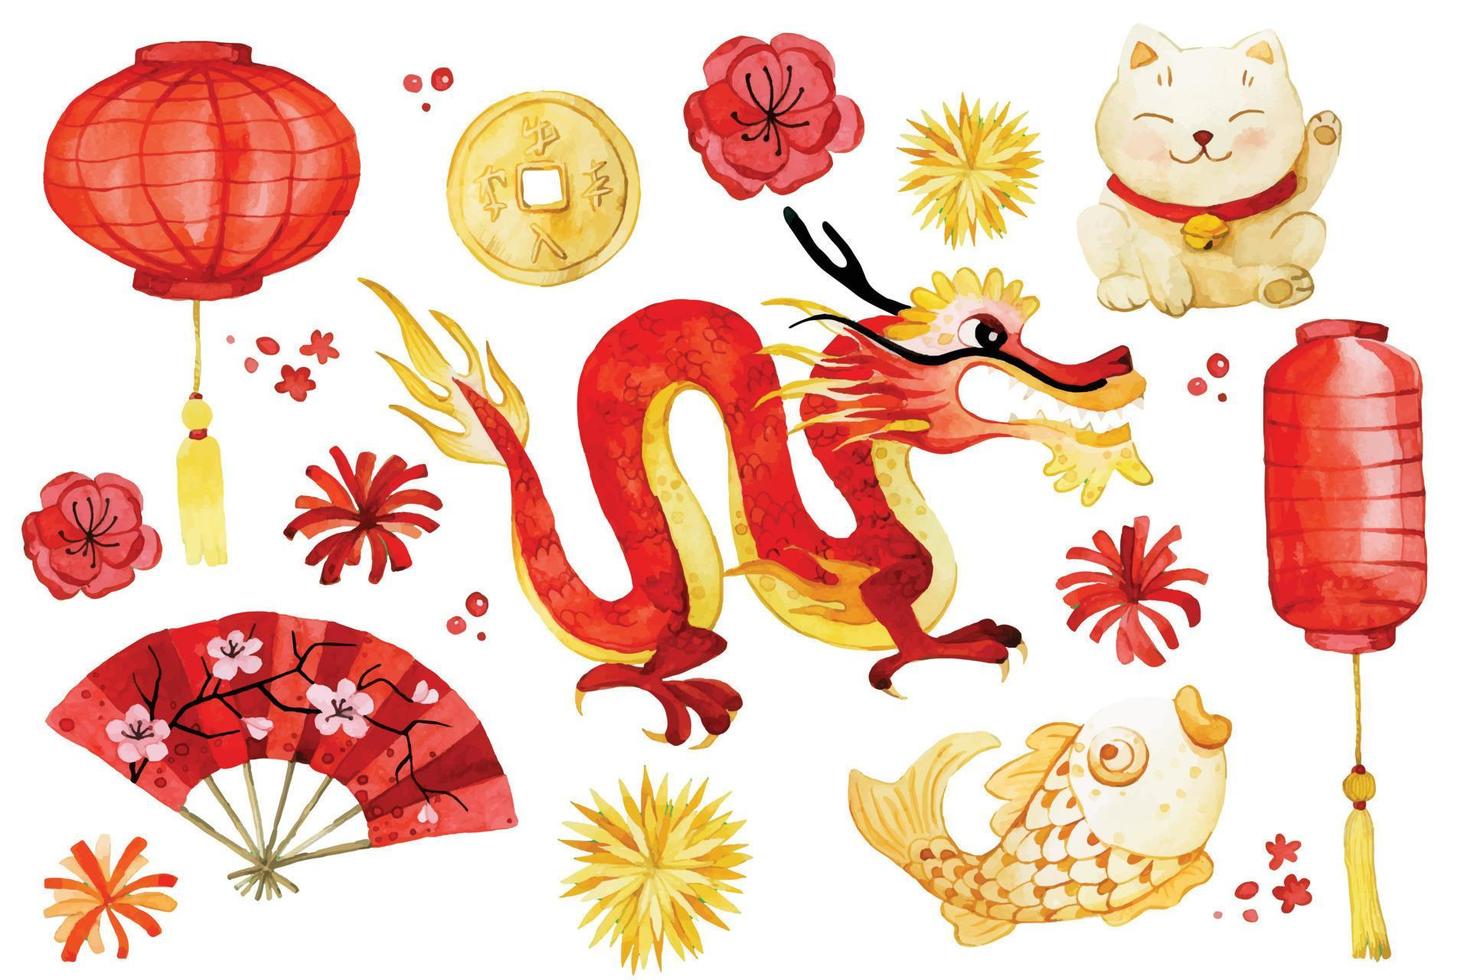 Lindos desenhos pintados em aquarela inspirados no zodíaco chinês - Bons  Tutoriais